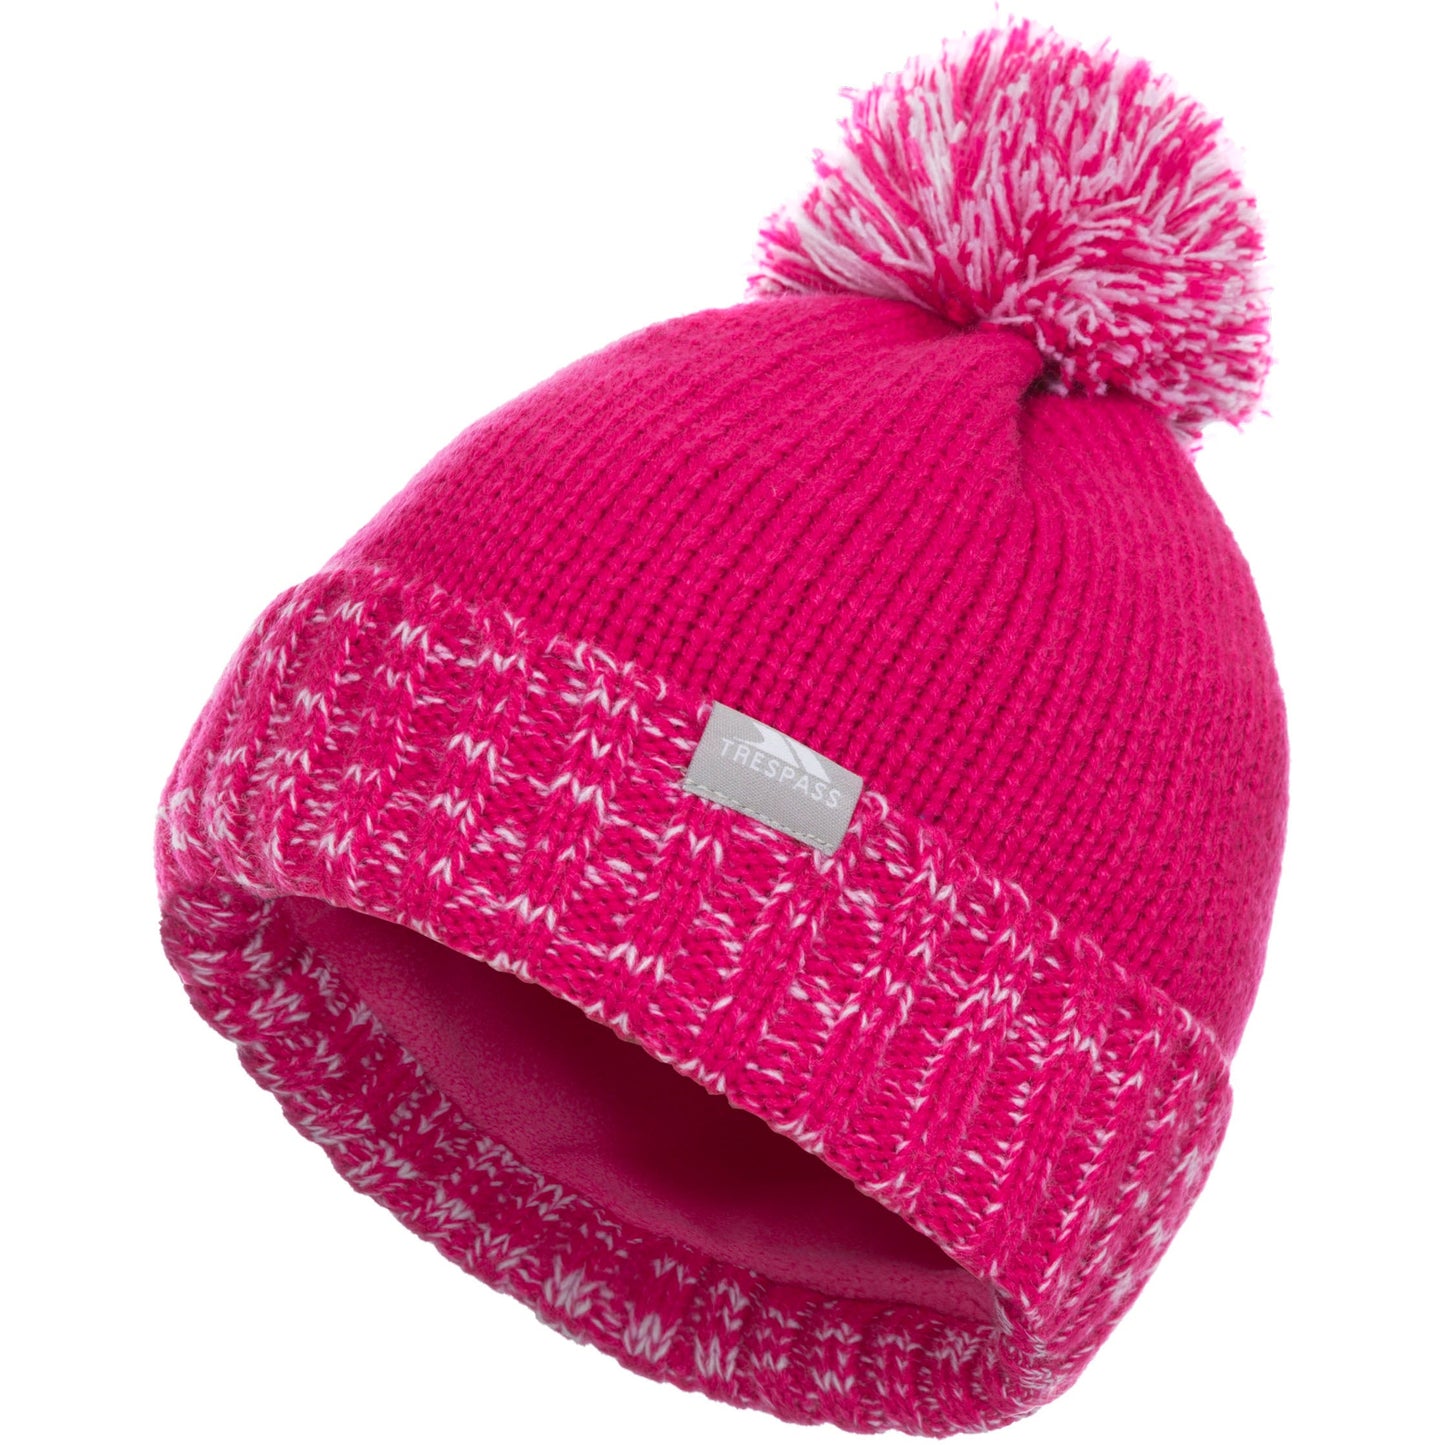 Nefti Unisex Kids Knitted Hat - Pinkn Lady